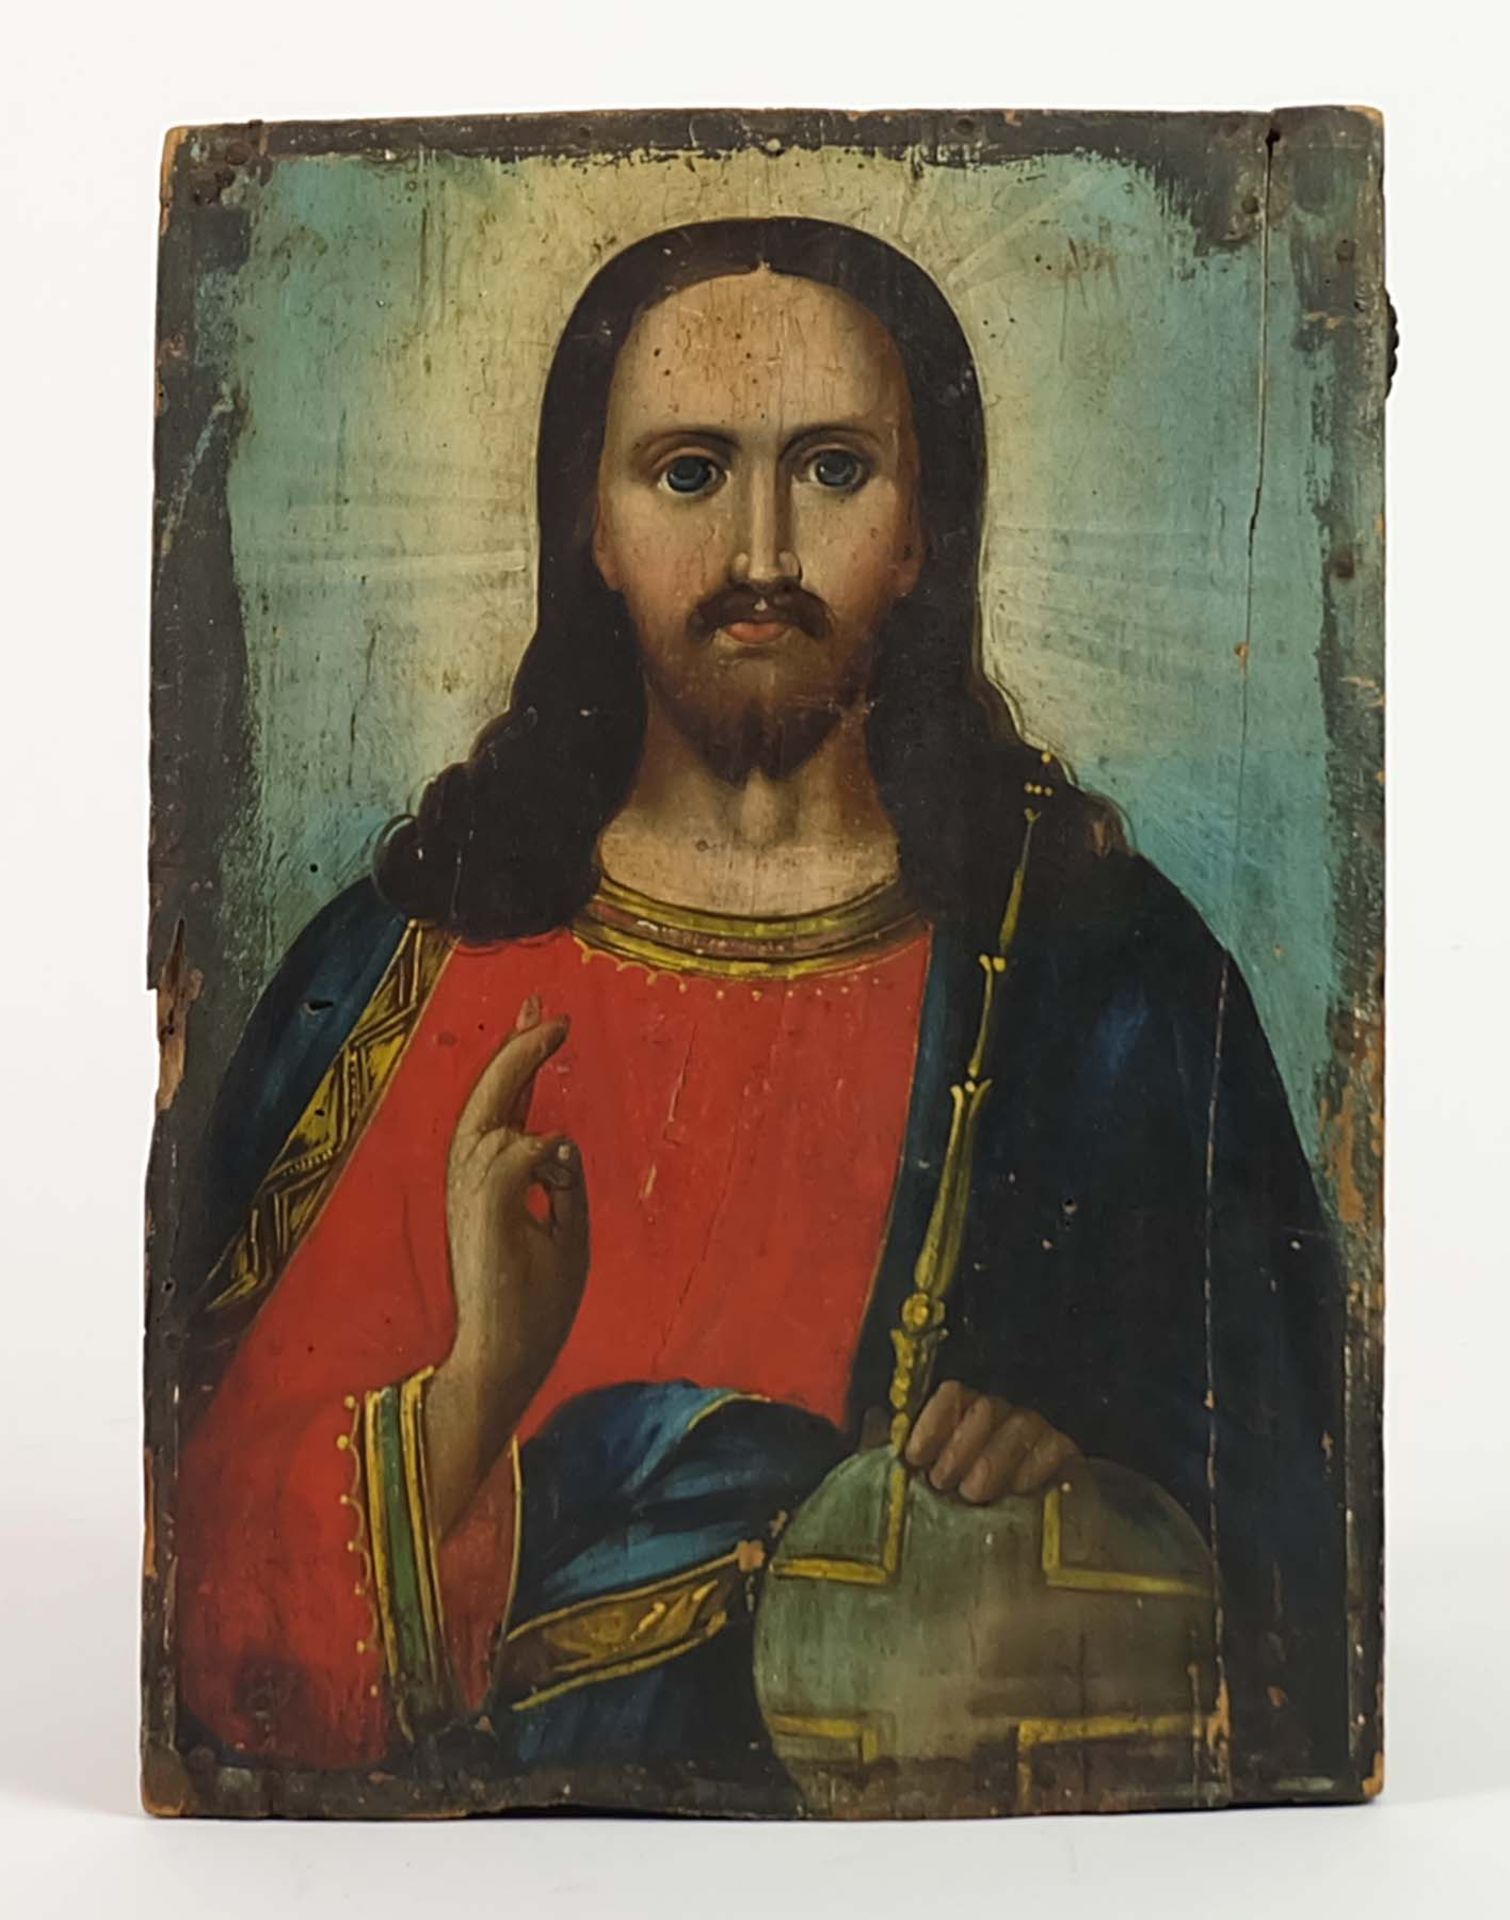 IKONE, Russland, 1. Hälfte 19 Jh., Christus Pantokrator, 23,5 x 17,5 cm, rest, min besch.